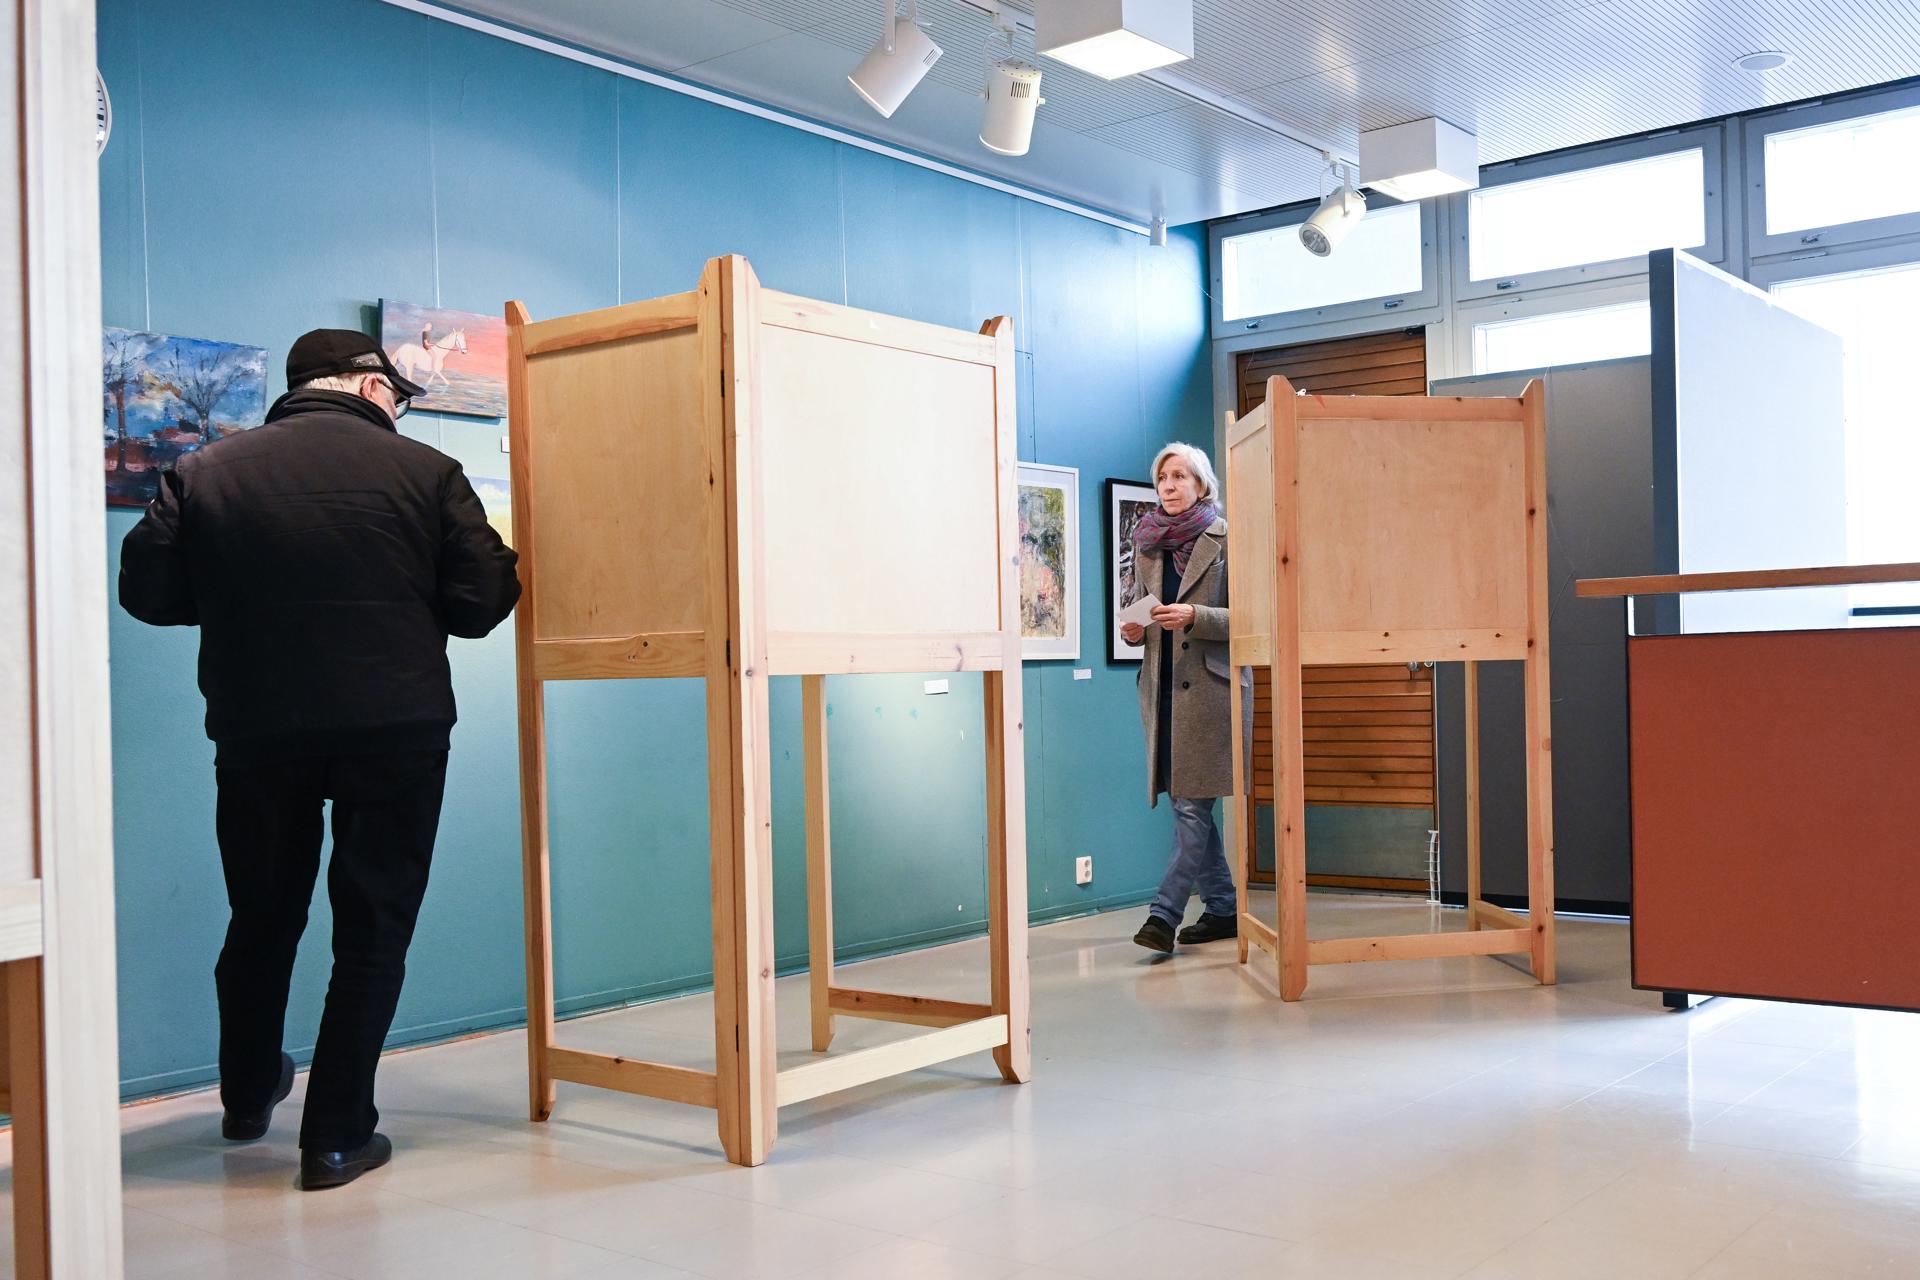 La jornada electoral en Finlandia transcurre con normalidad